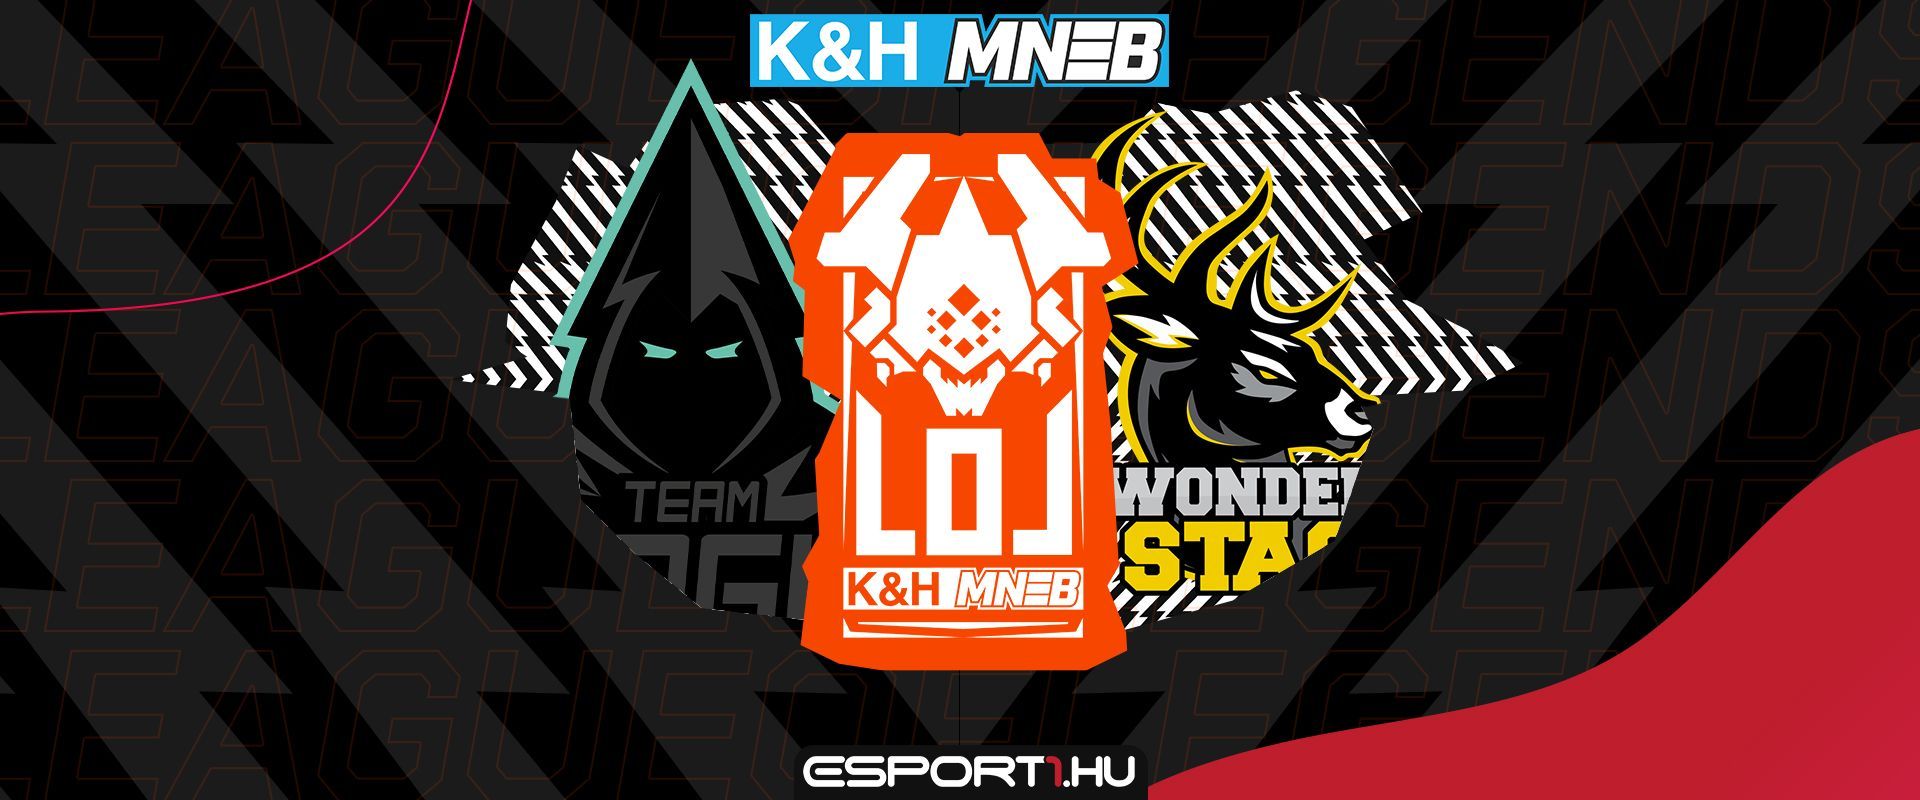 Ki lesz a K&H MNEB LoL bajnoka? Ezekre tippeltek a csapatok!